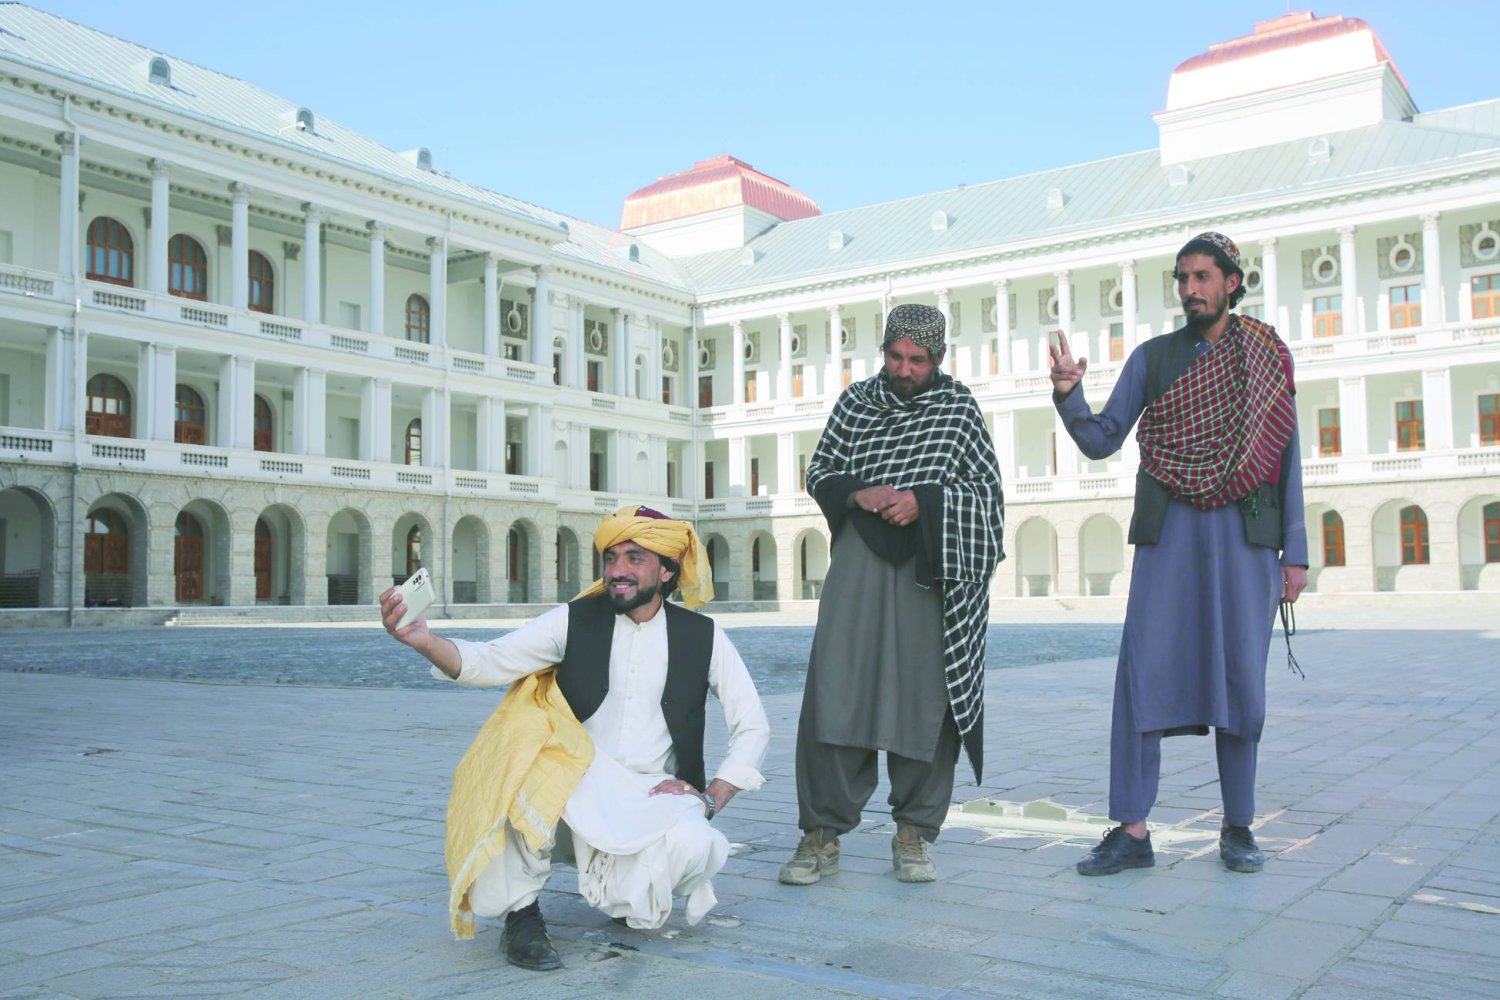 
أفغان يلتقطون صور سيلفي في قصر دار الأمان الذي تم تجديده في كابل الأربعاء الماضي (أ.ب)